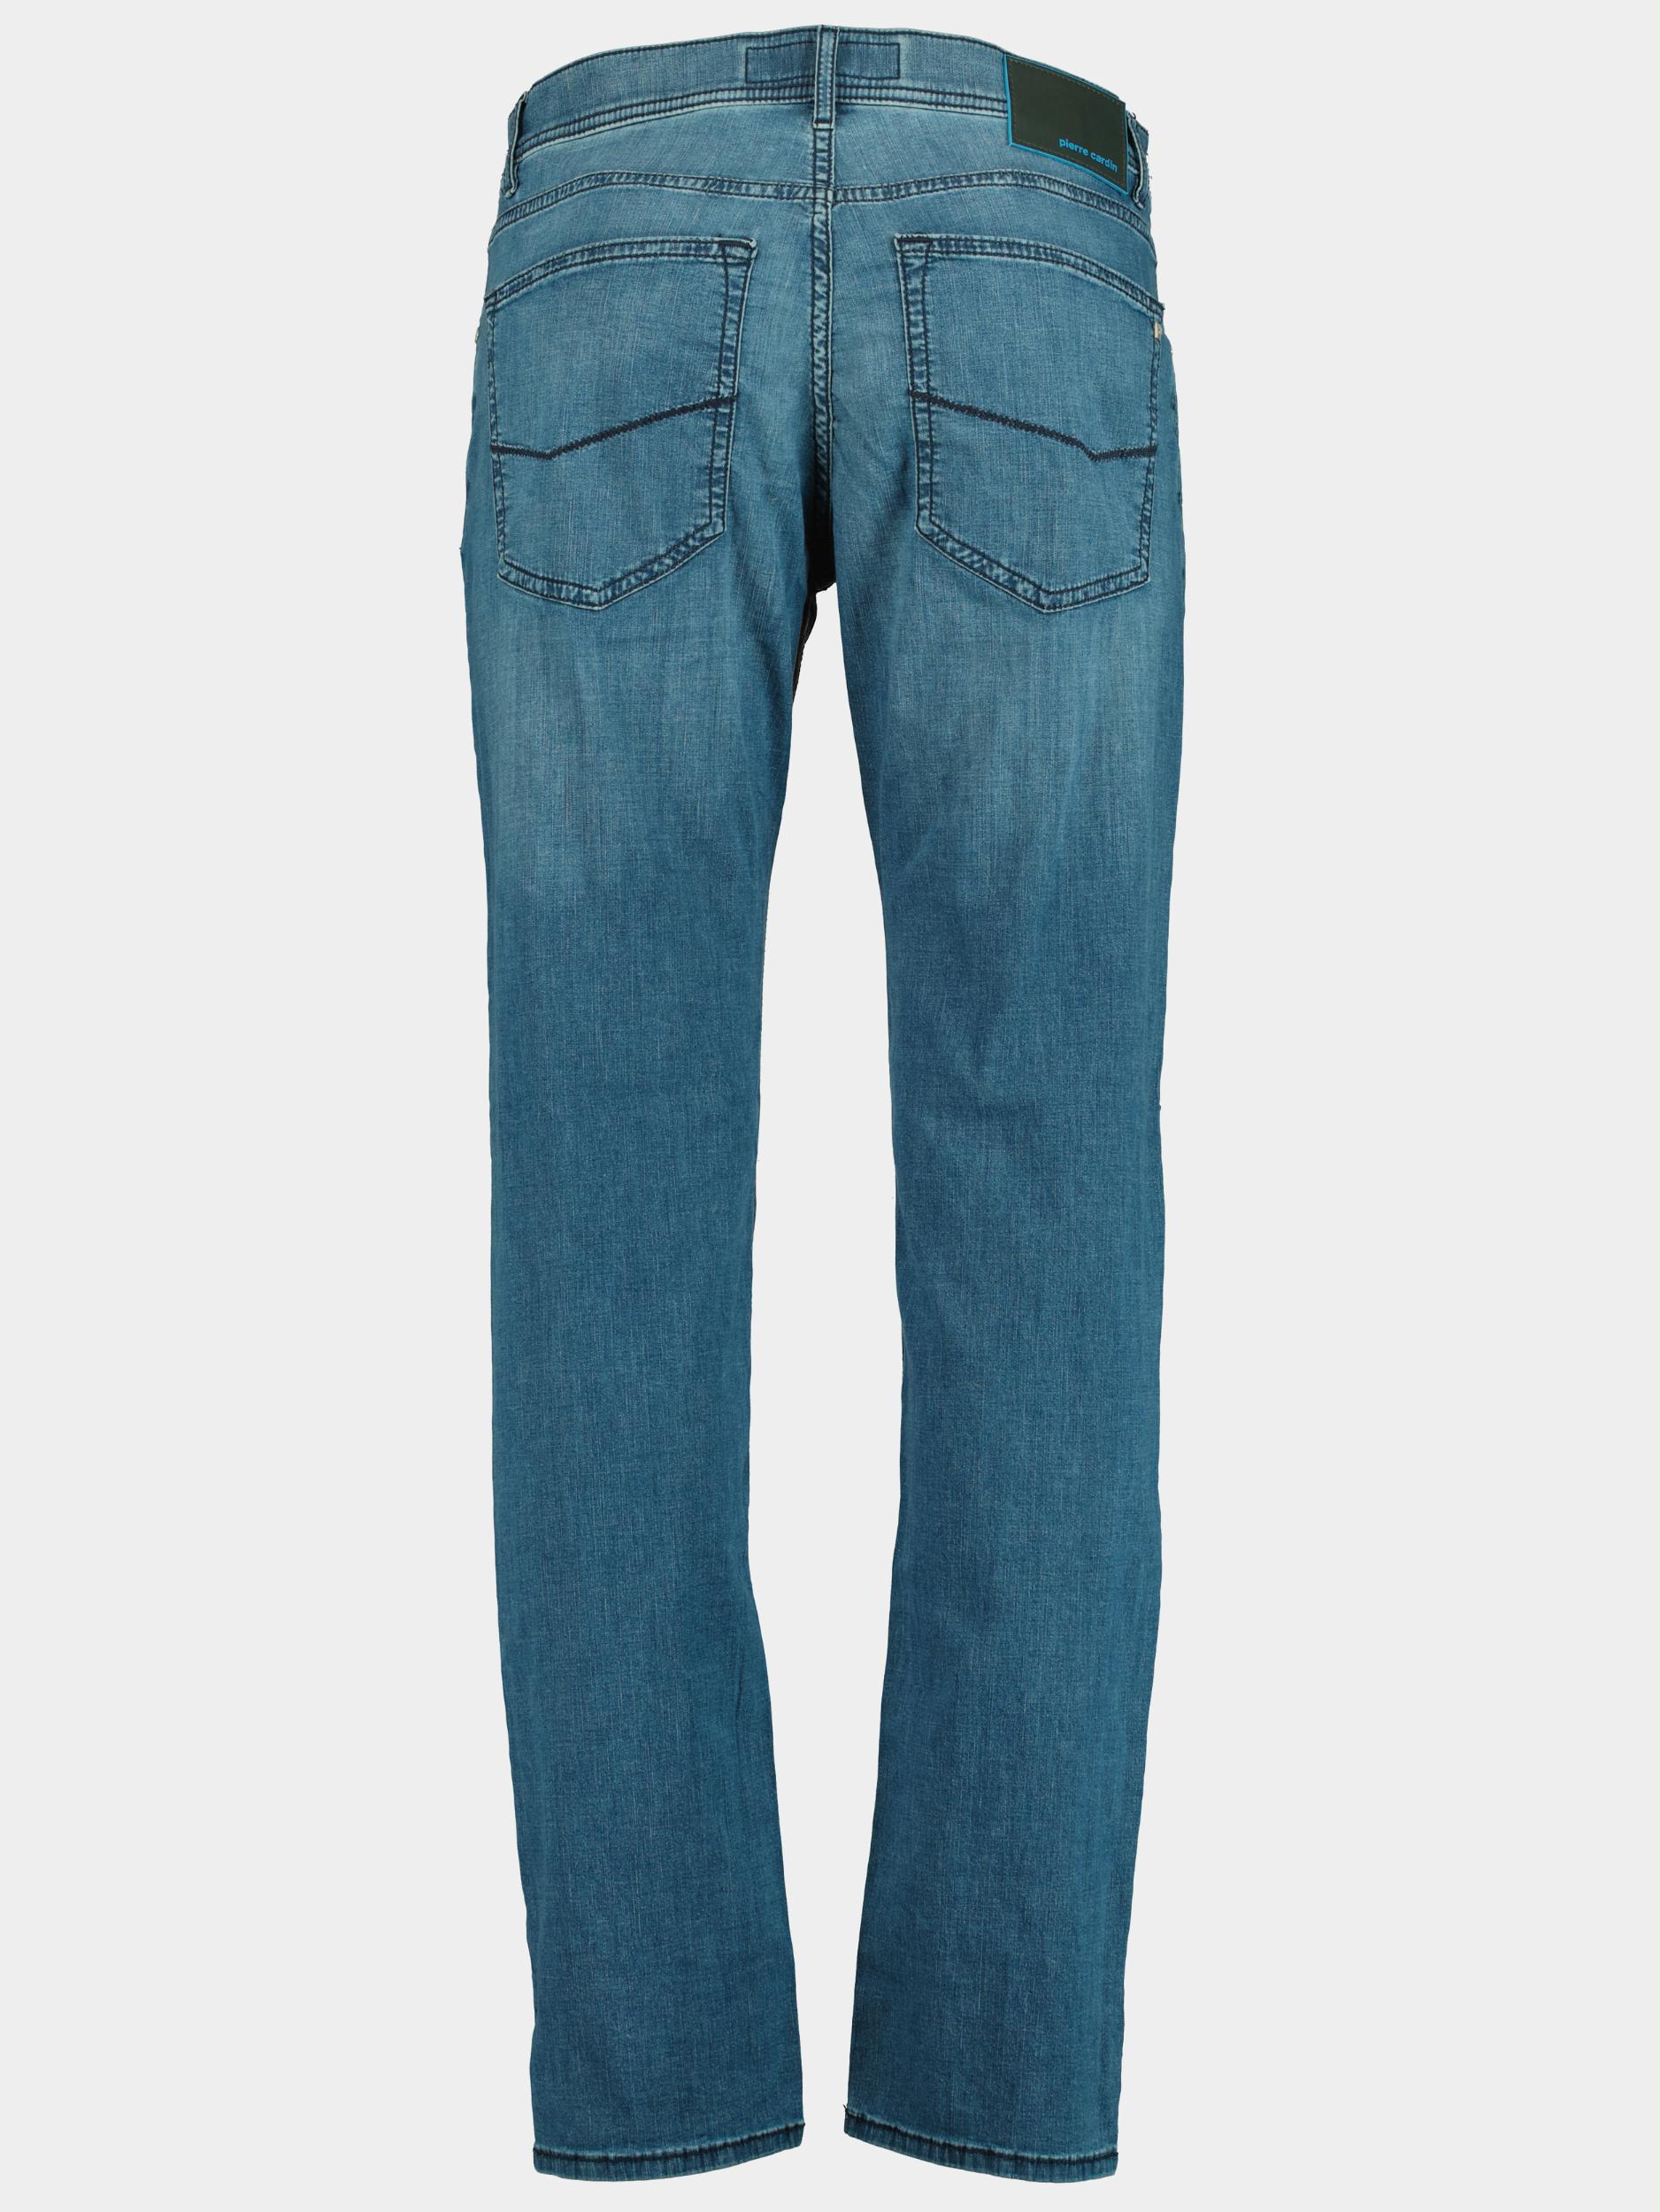 Pierre Cardin 5-Pocket Jeans Blauw  C7 30910.7335/6847